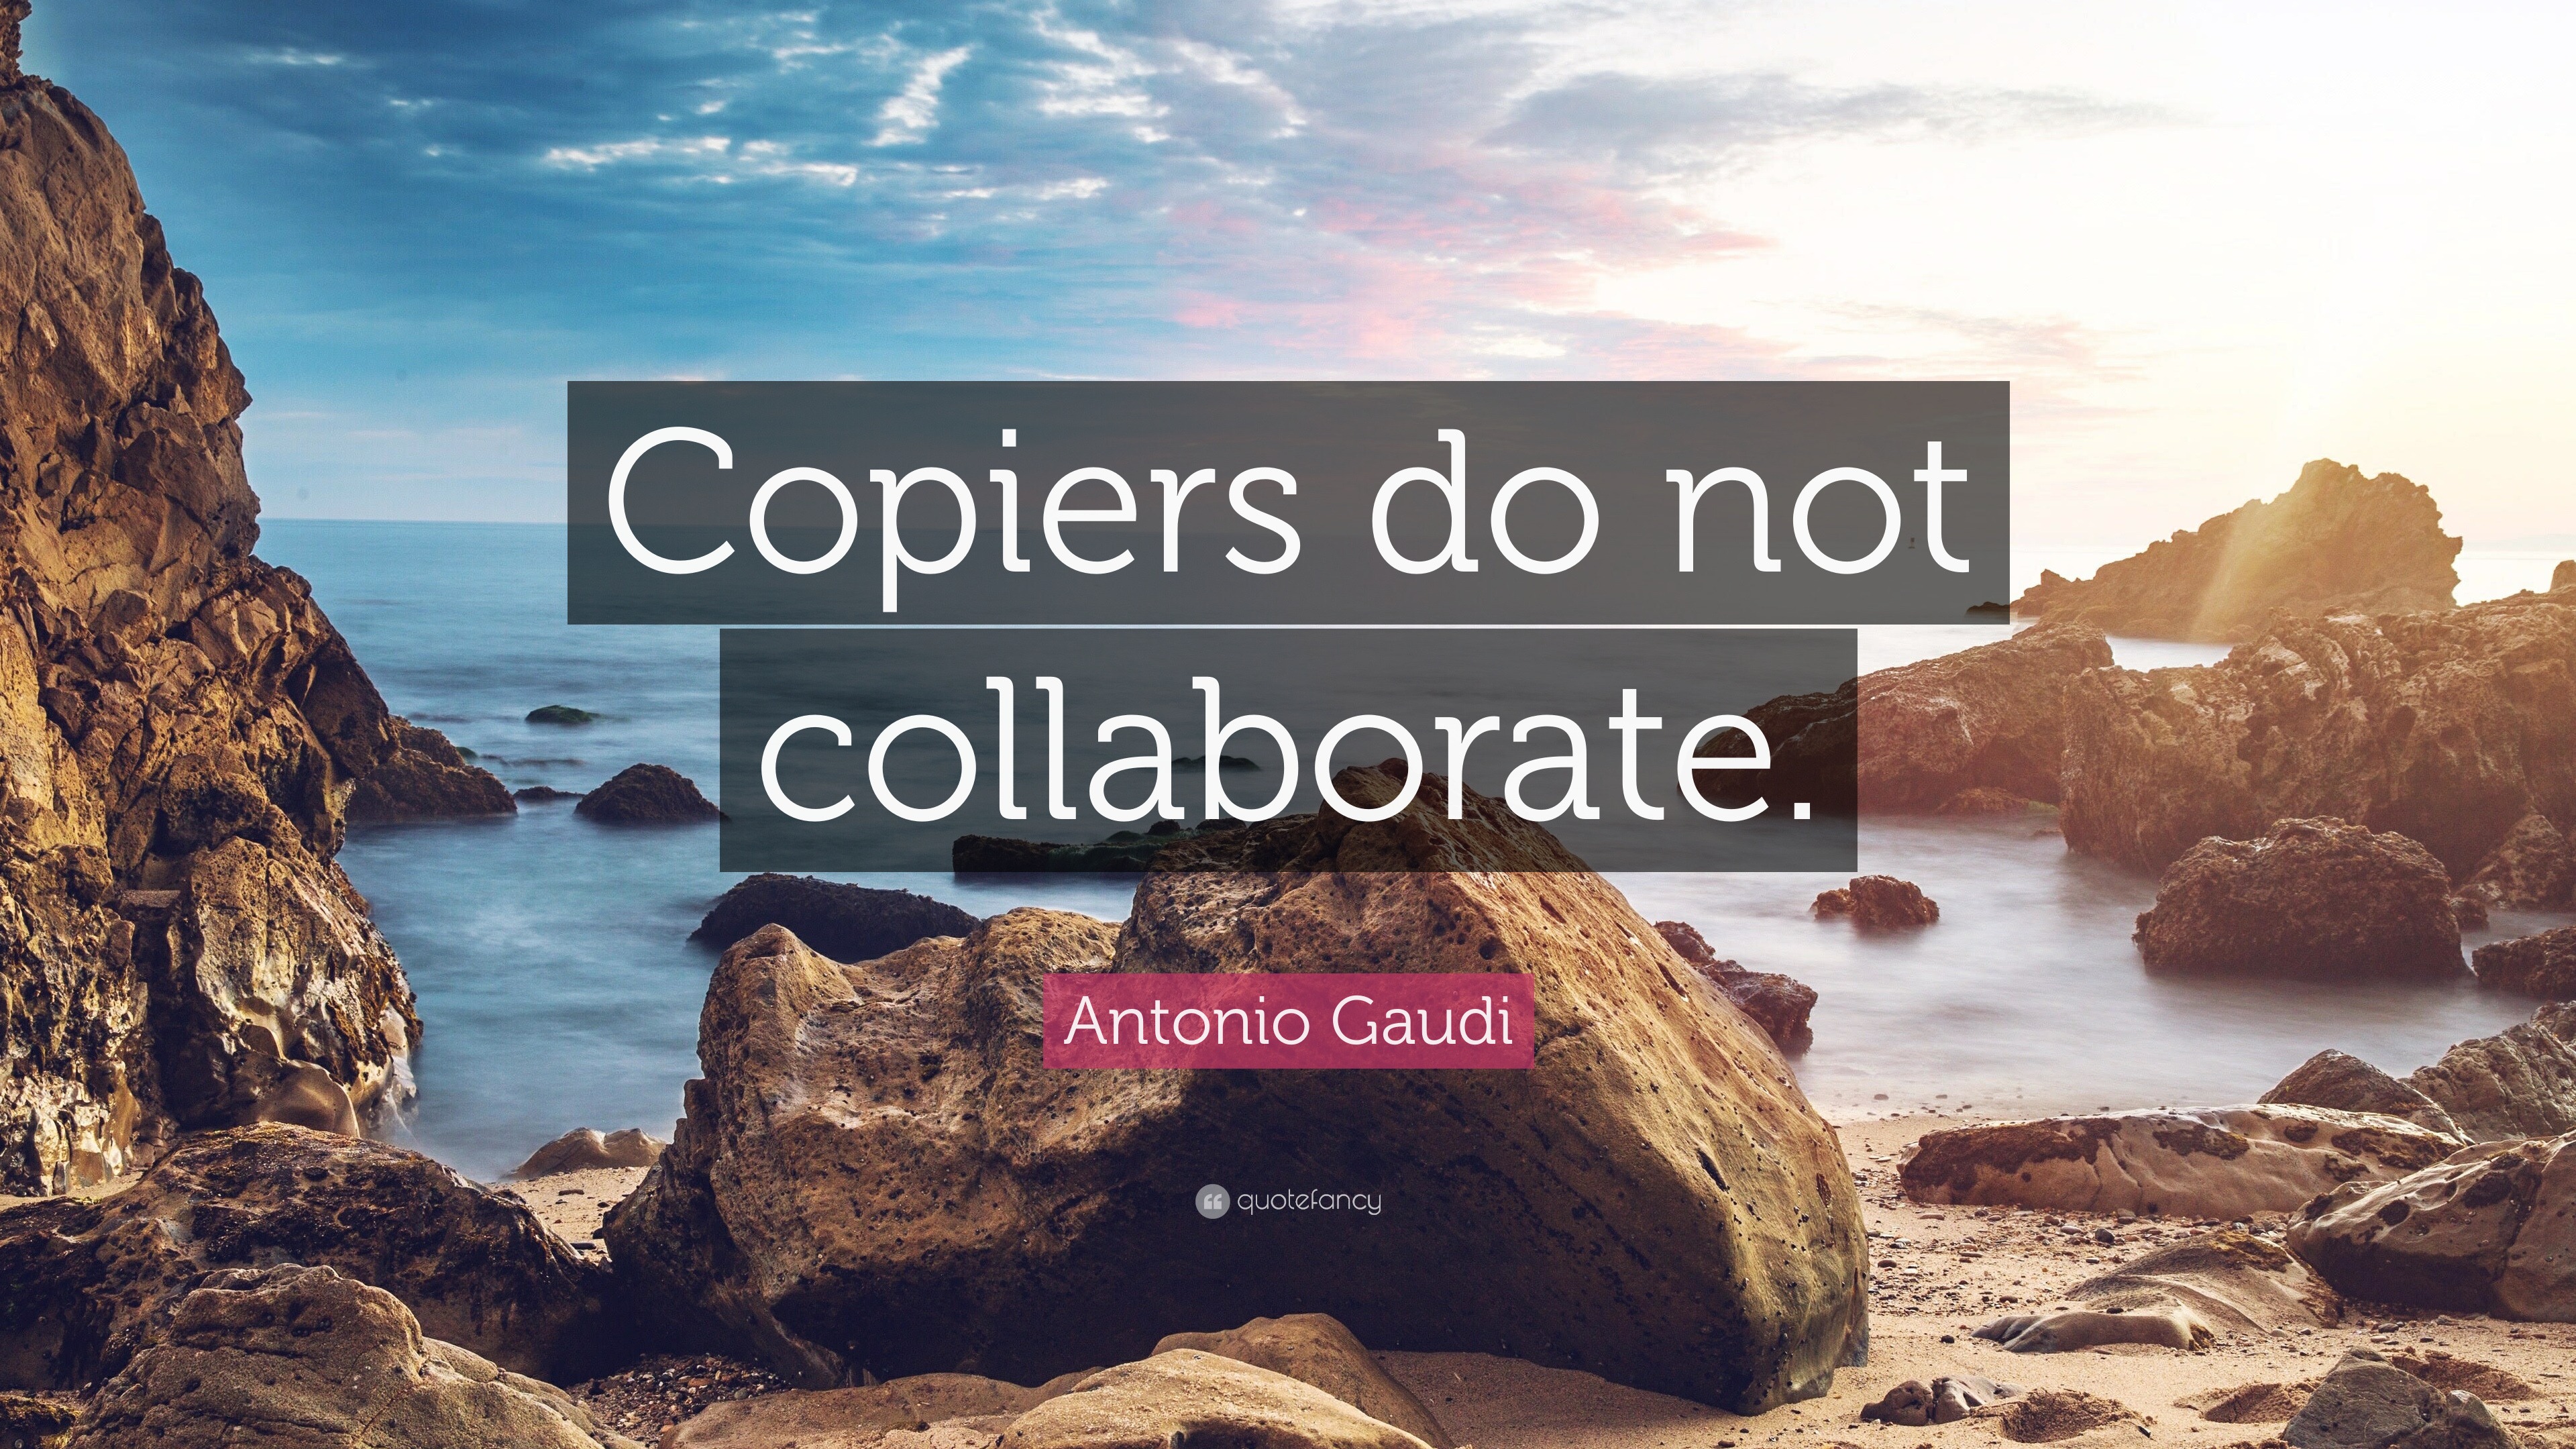 Antonio Gaudi Quote “Copiers do not collaborate.”